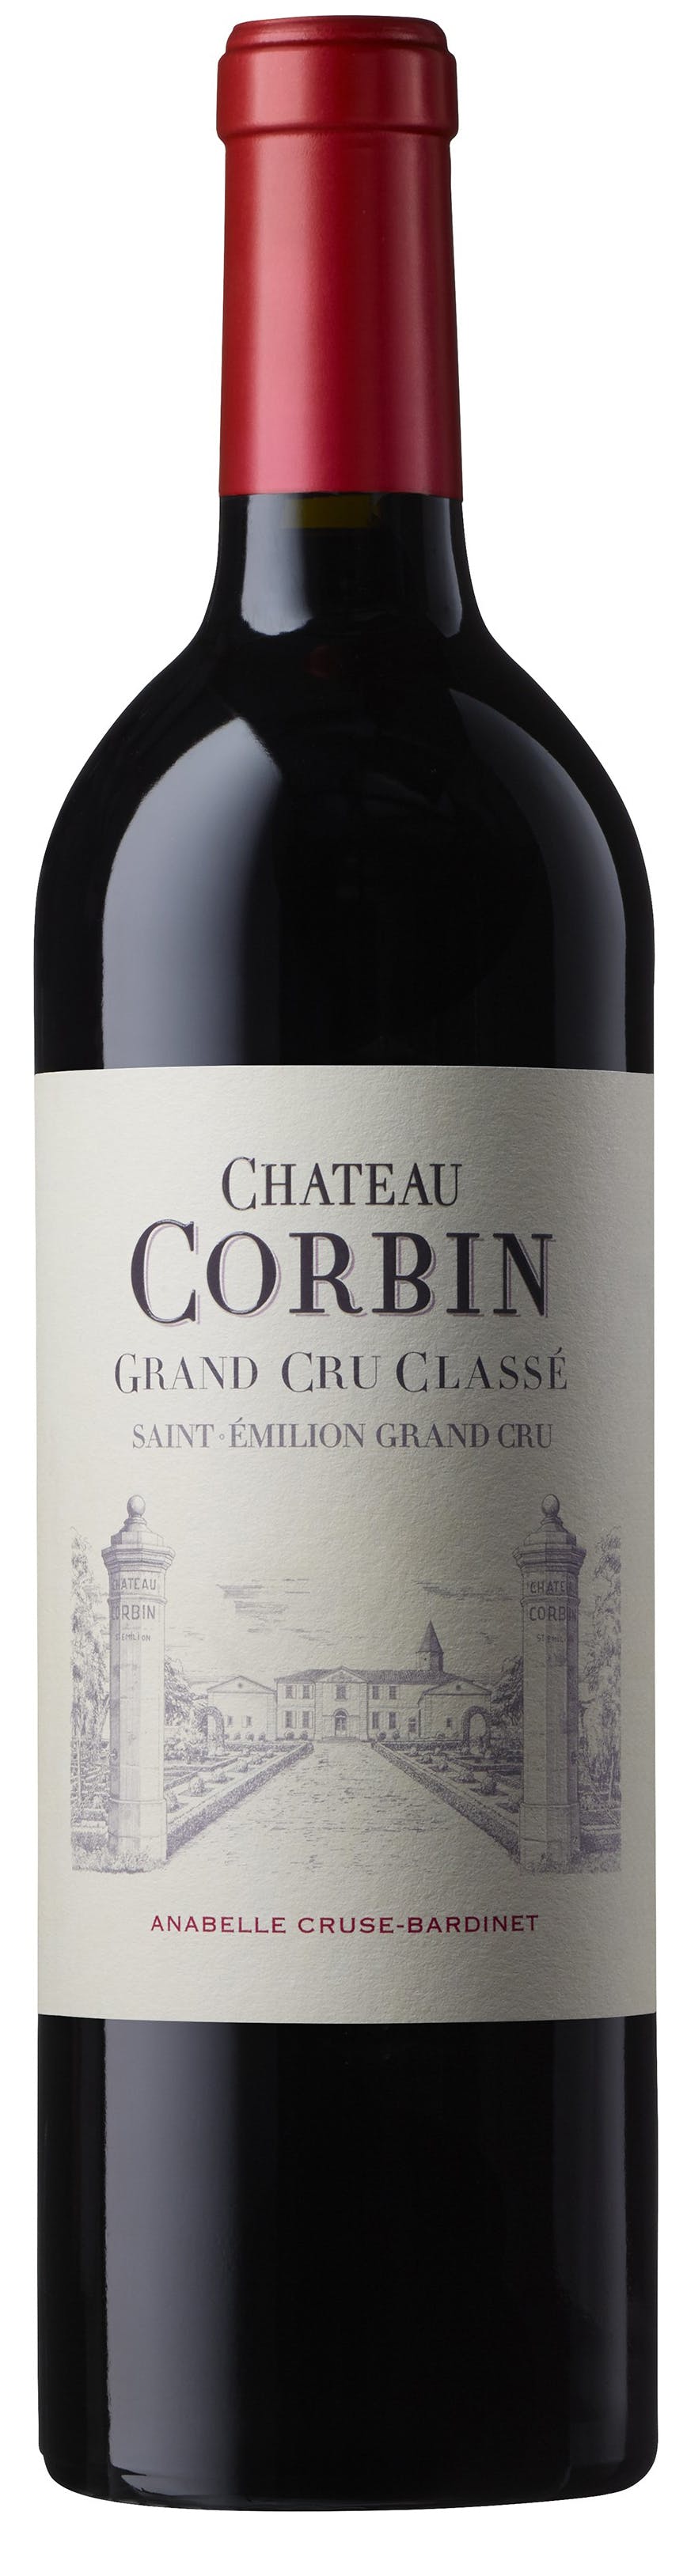 Vin de Bordeaux Saint Emilion Grand Cru rouge 2011 du Château Corbin.